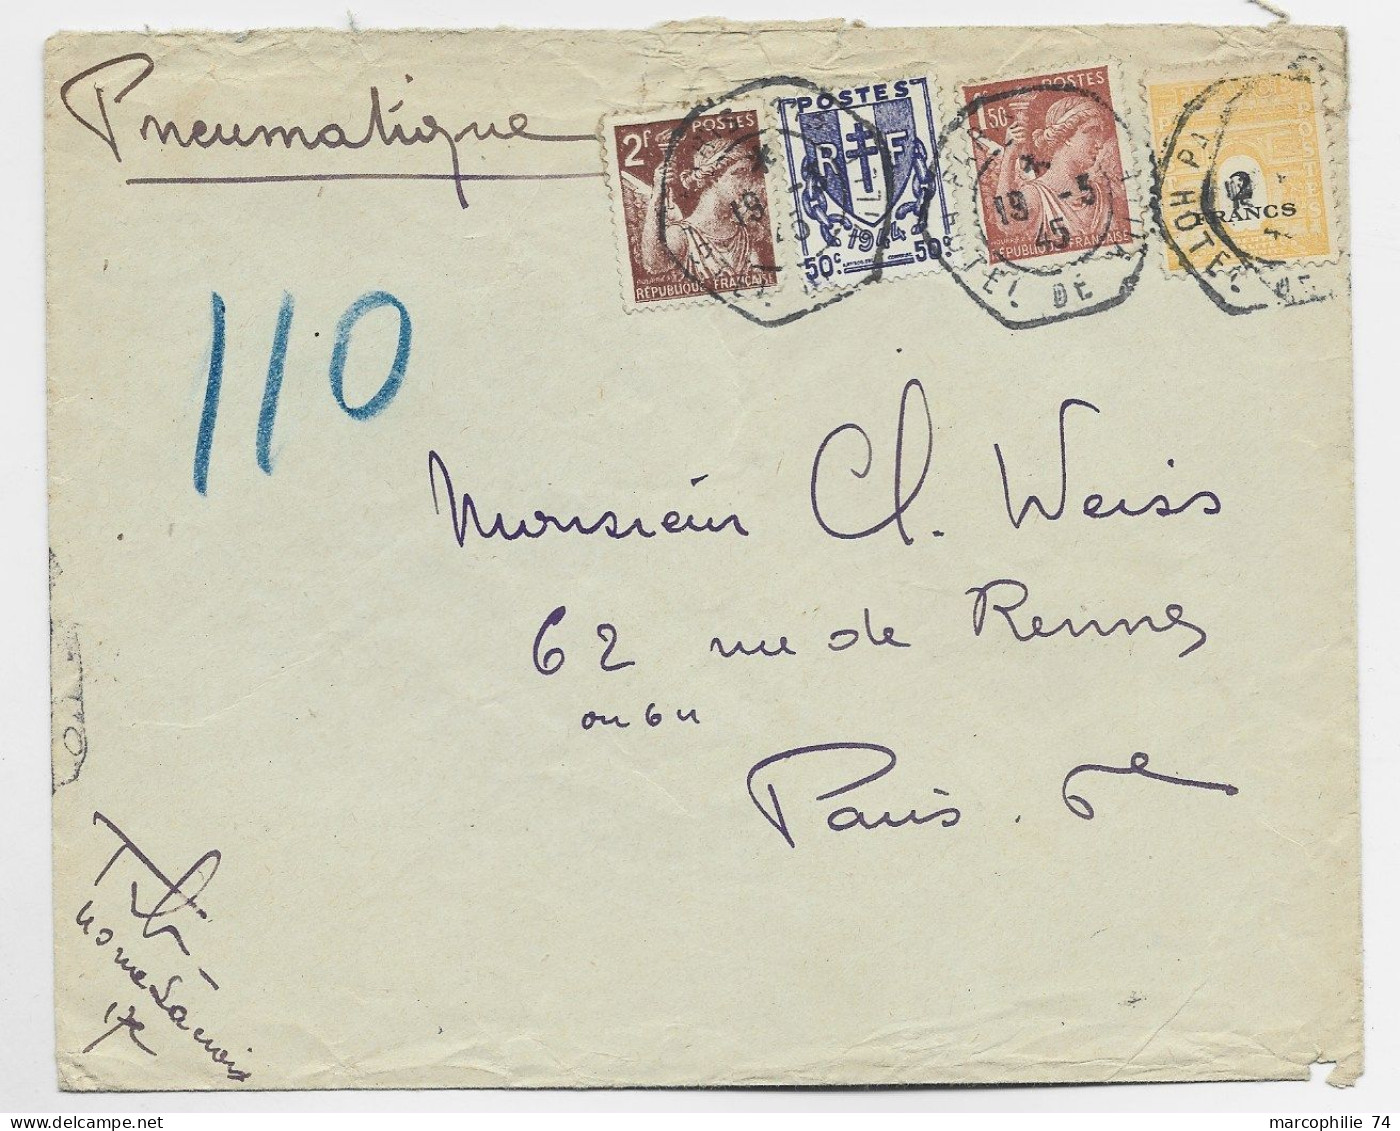 FRANCE ARC TRIOMPHE 2FR+ CHAINE 50C + 2FR+1FR50  PNEUMATIQUE C. HEX PARIS 19.3.1945 HOTEL DE VILLE AU TARIF - 1944-45 Triumphbogen